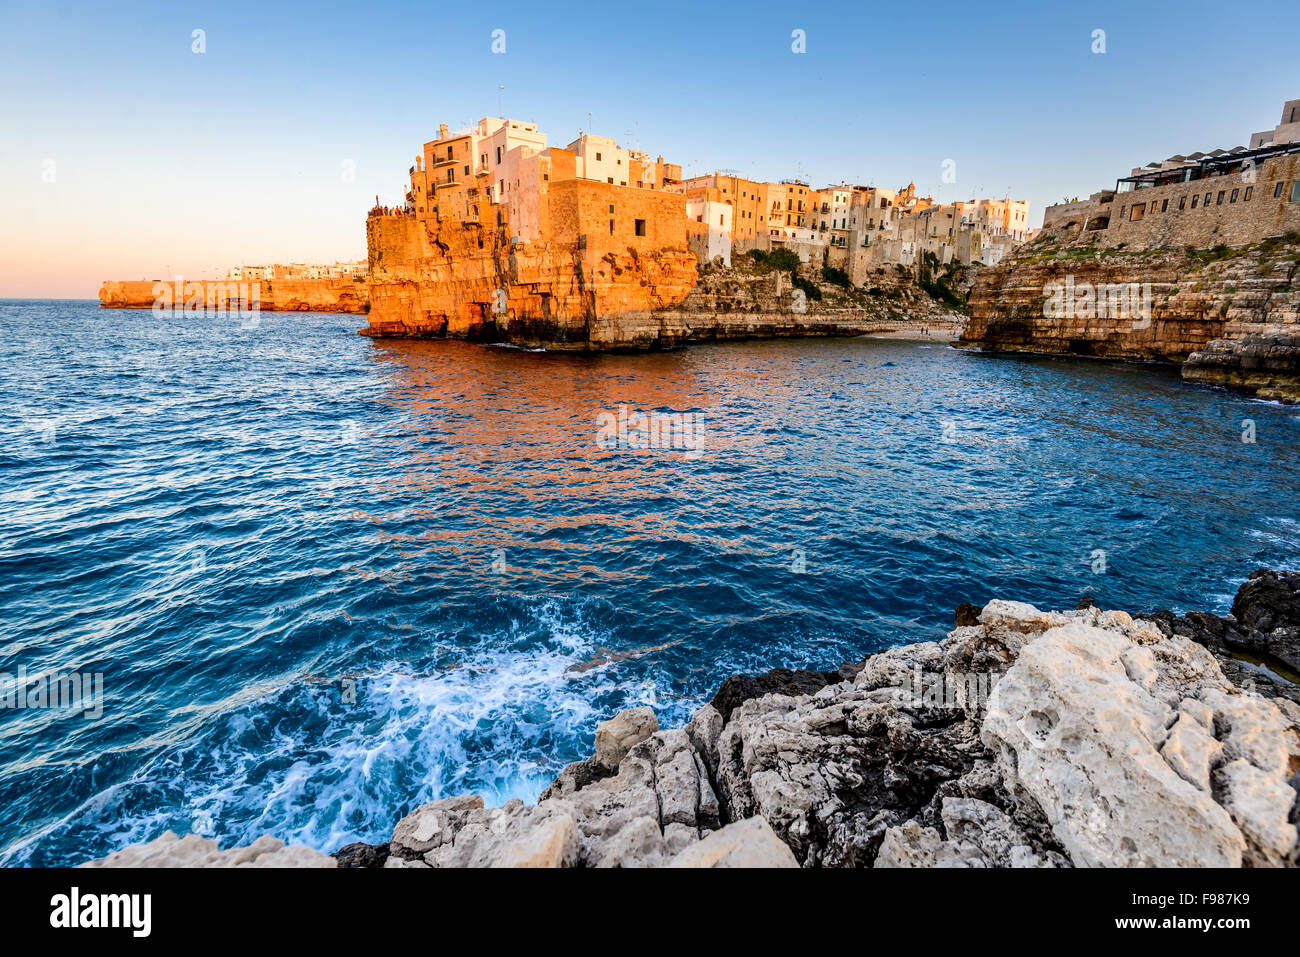 La puglia, Italia. HDR sunset scenario di Polignano a Mare, cittadina in provincia di bari, puglia, Italia meridionale sul Mare Adriatico Foto Stock